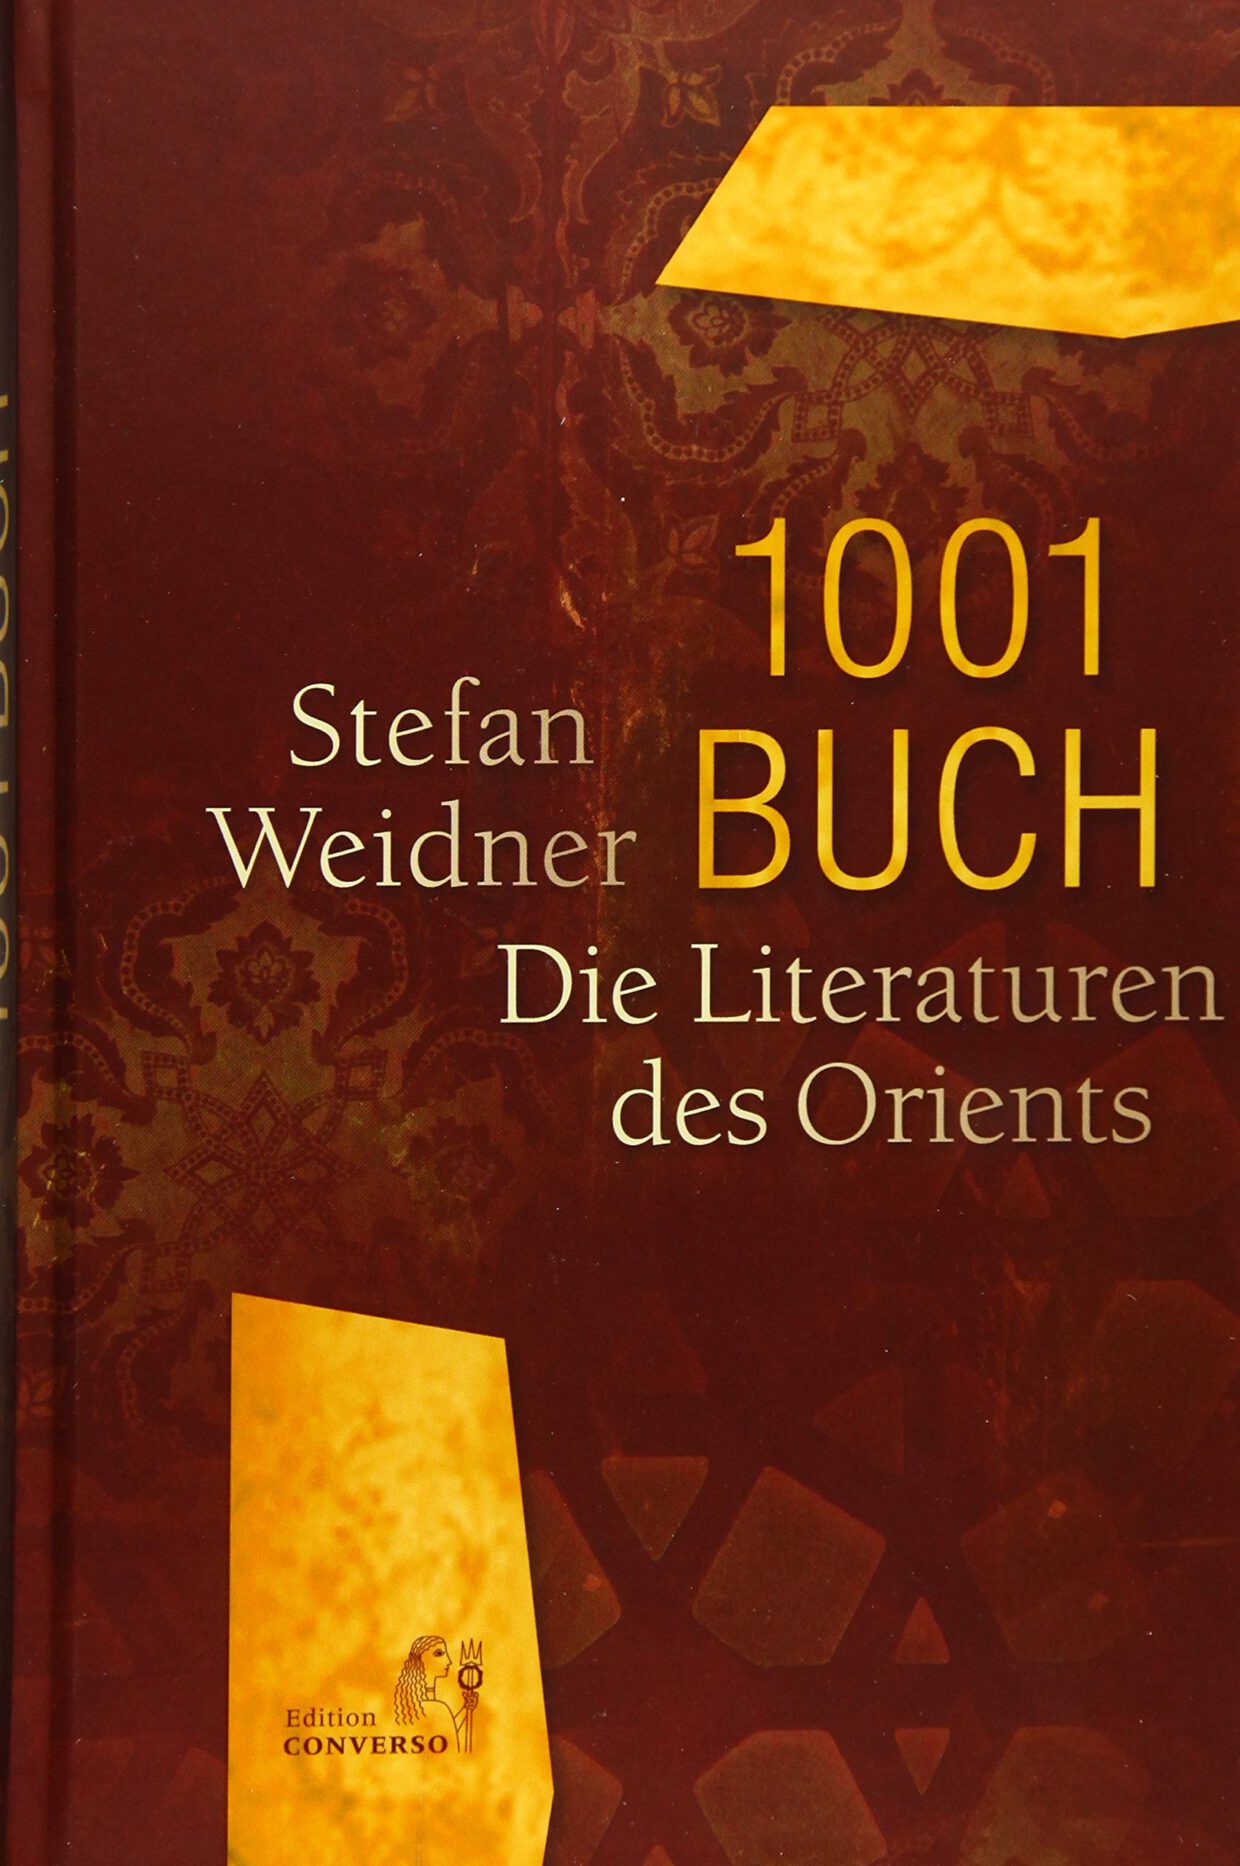 Stefan Weidner: 1001 Buch.